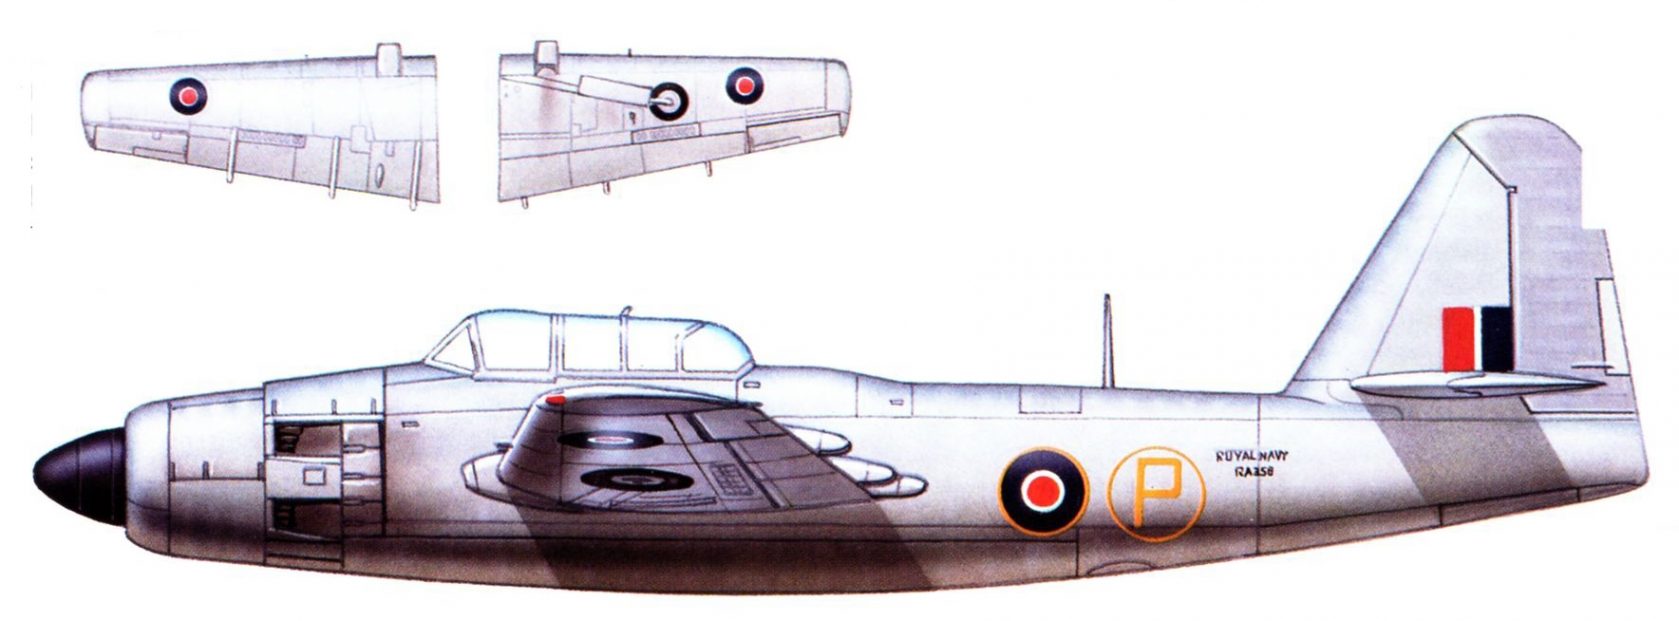 Опытные палубные многоцелевые ударные самолеты Fairey Spearfish. Великобритания